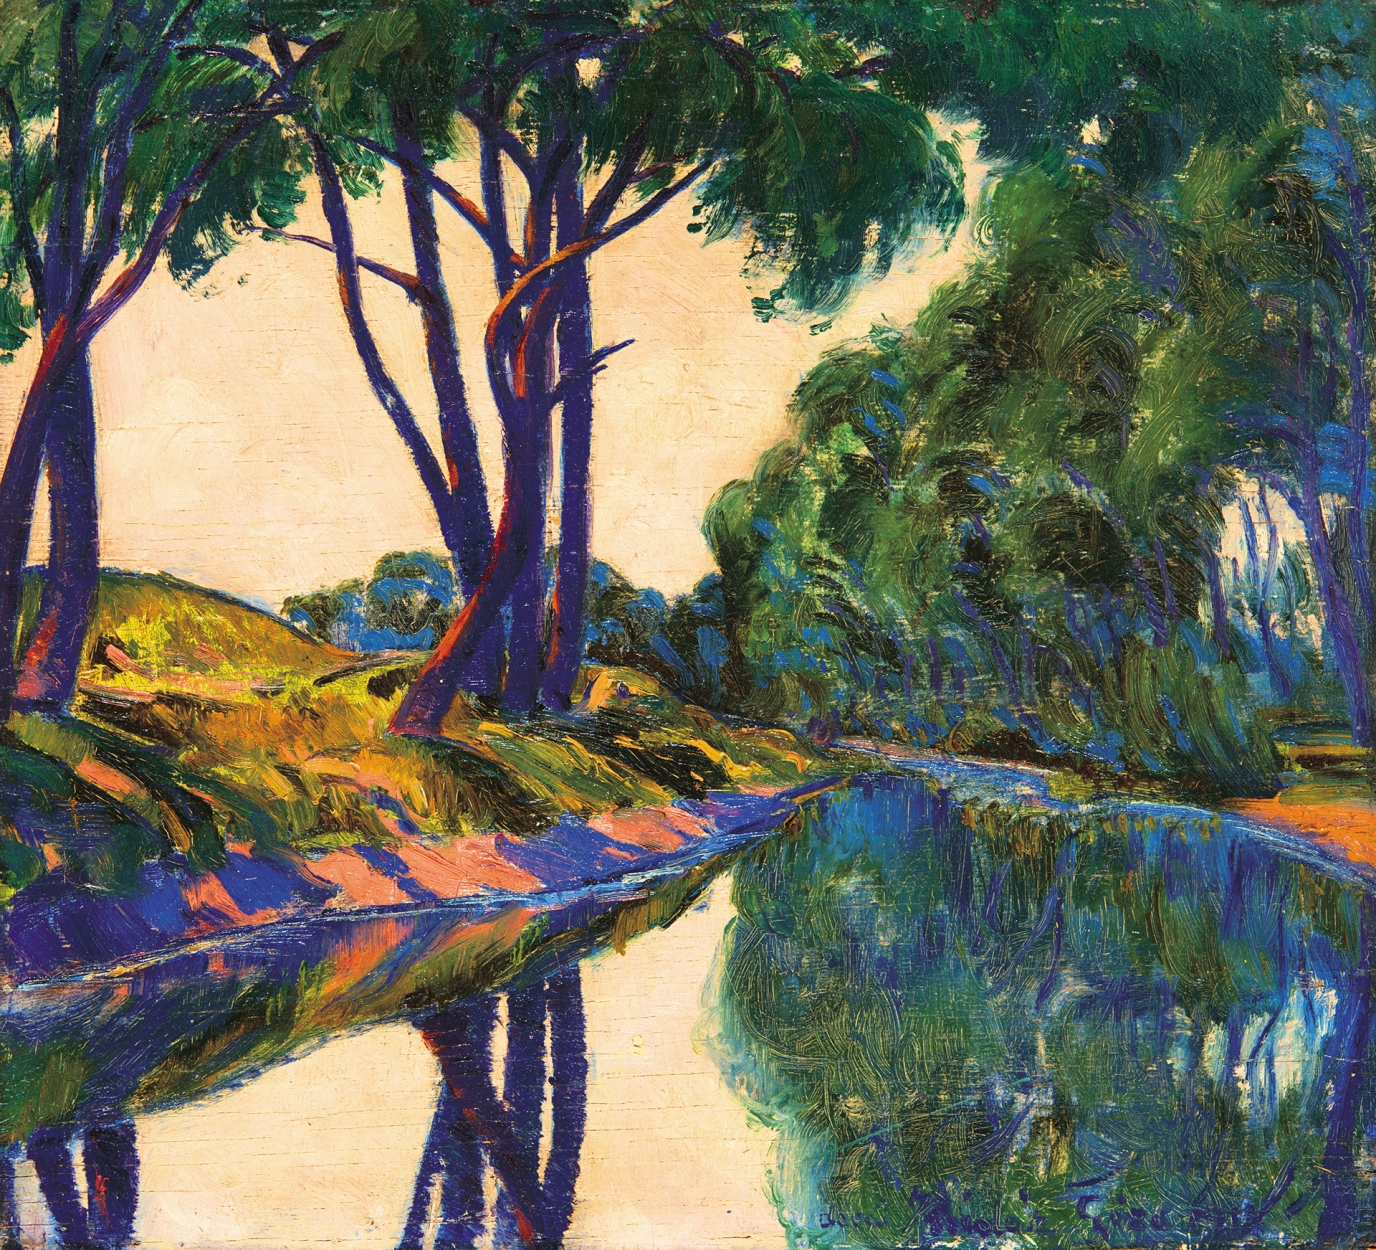 Kádár Géza (1878-1952) Reflection on the Riverbank, around 1920